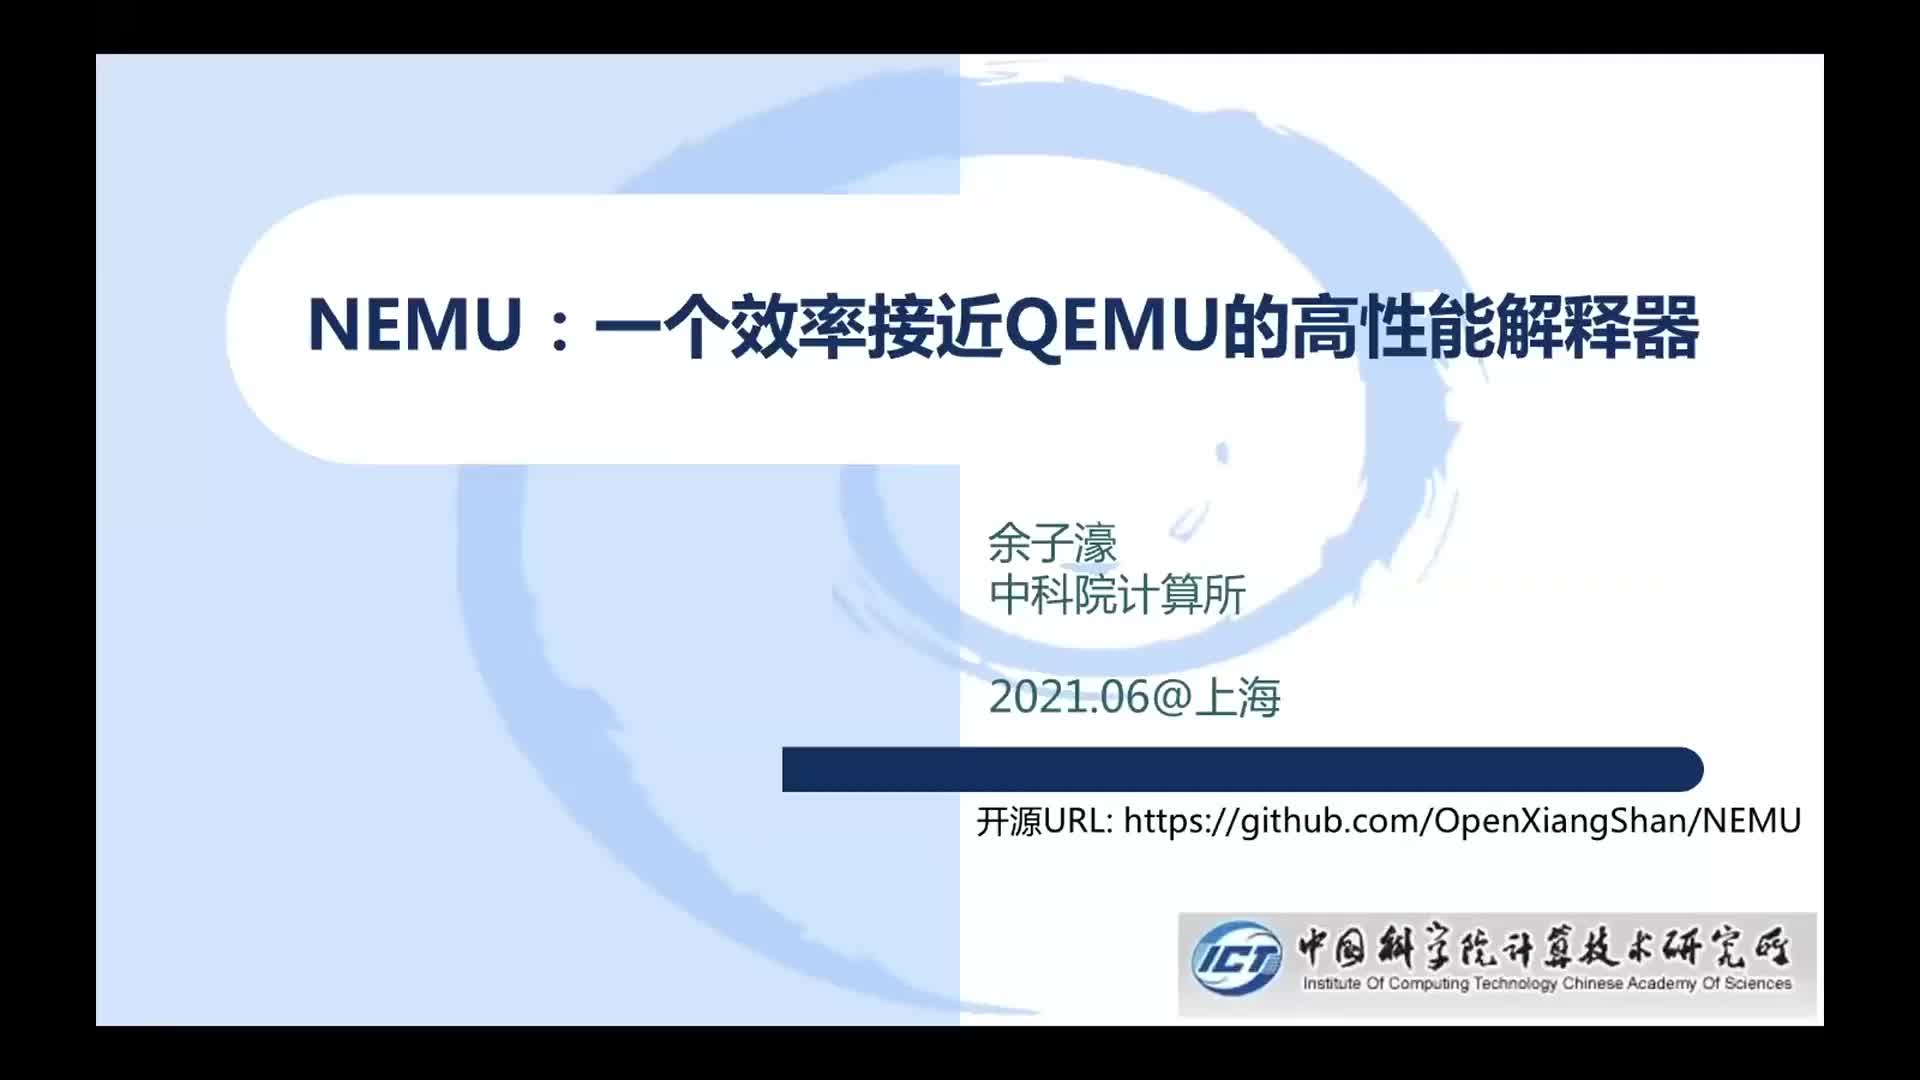 【余子濠】NEMU：一个效率接近QEMU的高性能解释器 - 第一届 RISC-V 中国峰会1